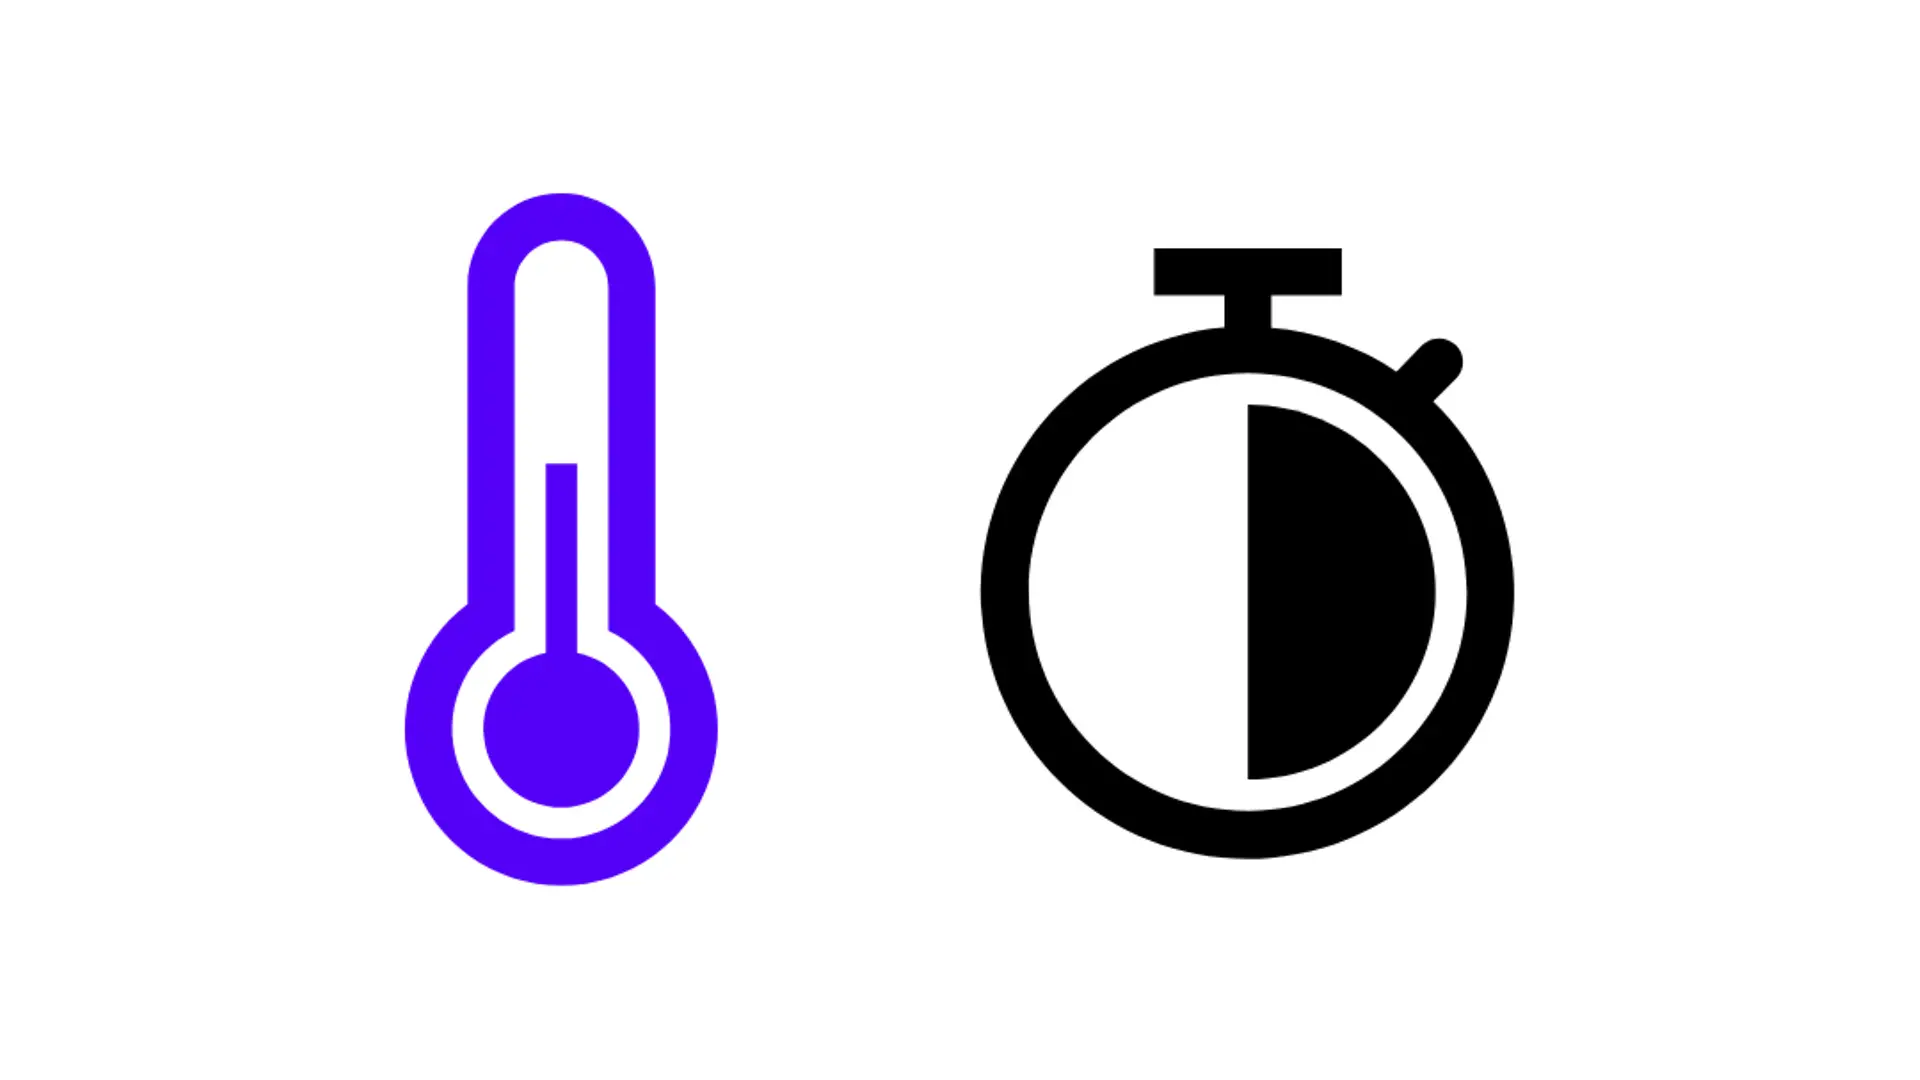 niebieski symbol termometru i symbol zegara, pół godziny